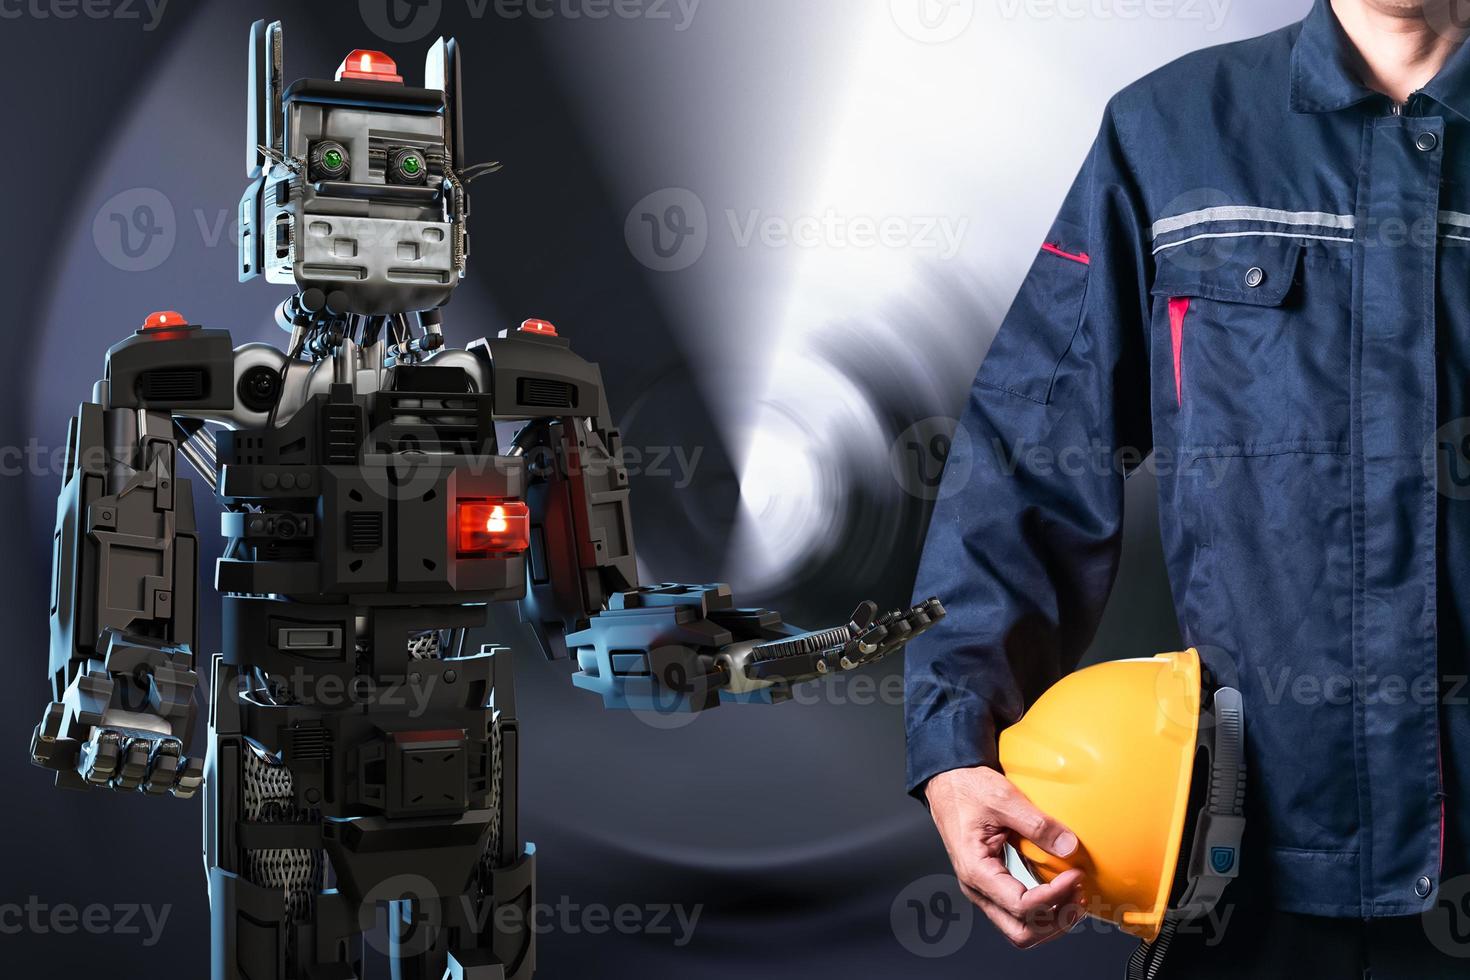 homme asiatique avec robot communauté métaverse pour vr avatar réalité jeu réalité virtuelle de personnes inspecteur service connecter technologie inspecteur mécanicien entretien robot dans l'usine photo